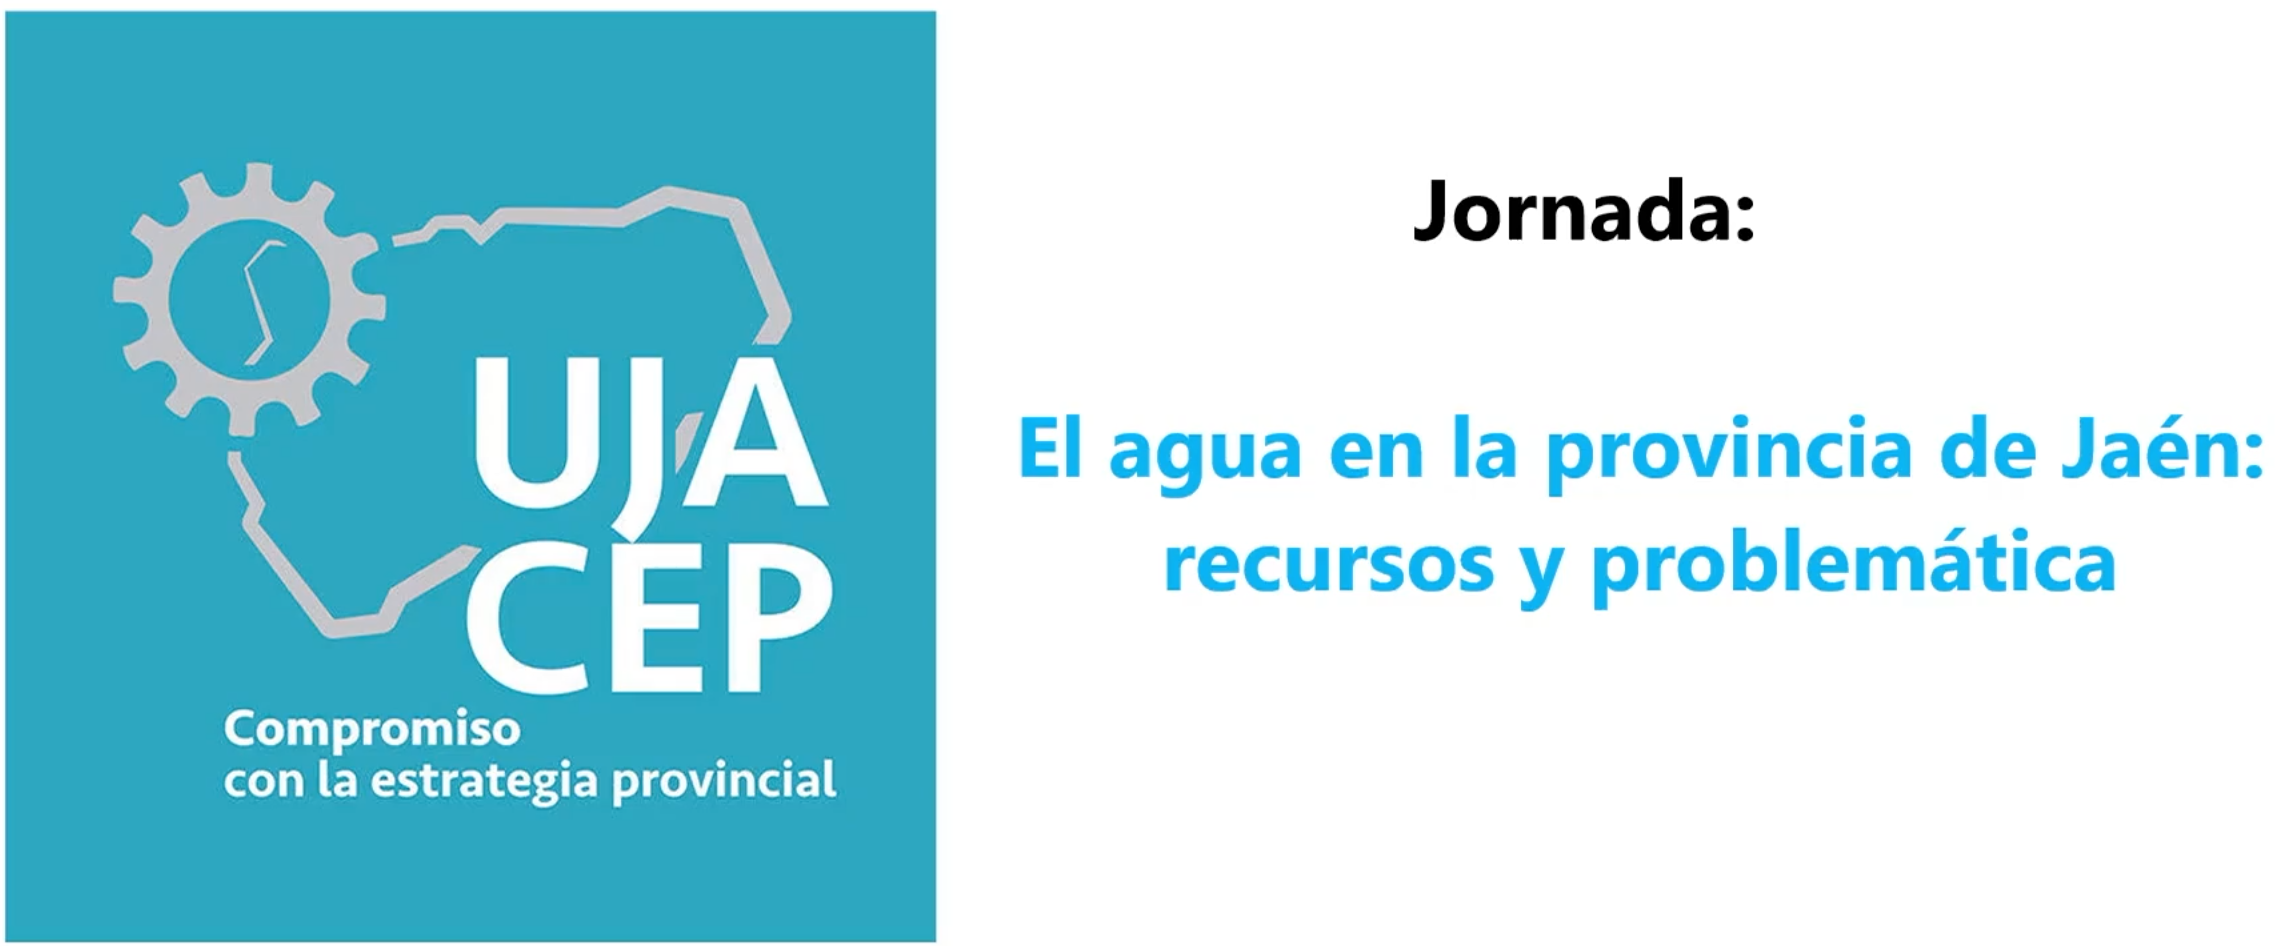 JORNADA: “El agua en la provincia de Jaén: recursos y problemática” 